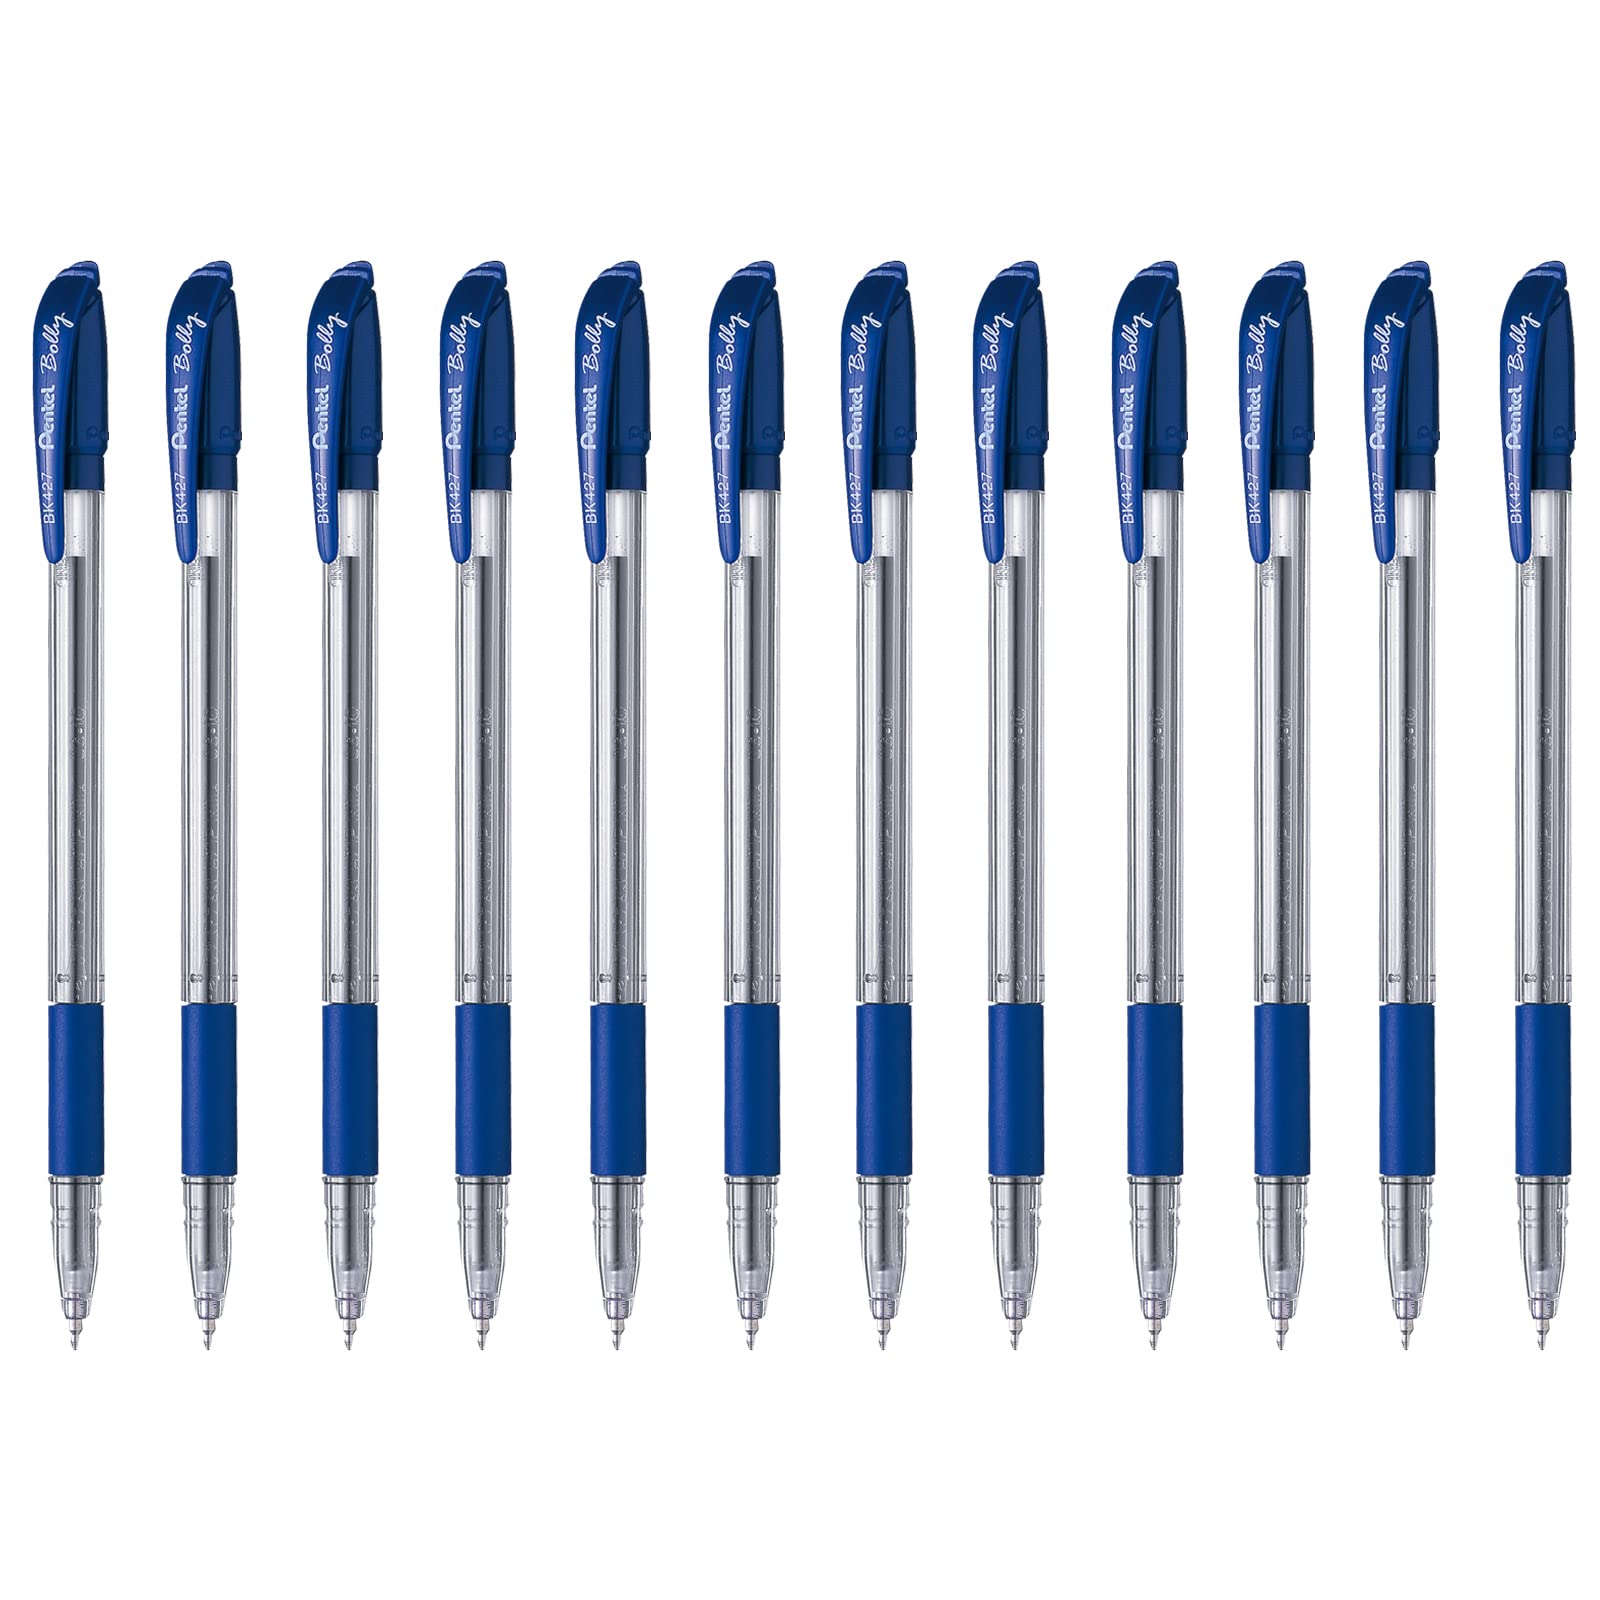 Bolígrafo Pentel bolly, punto fino 0.    Bolígrafo Pentel bolly color azul, punta metálica 0.7 mm (mediano), con agarre de caucho, cuerpo con grip y detalles que indican el color de tinta                                                                                                              m, color azul, 1 pieza                   - BK427-C